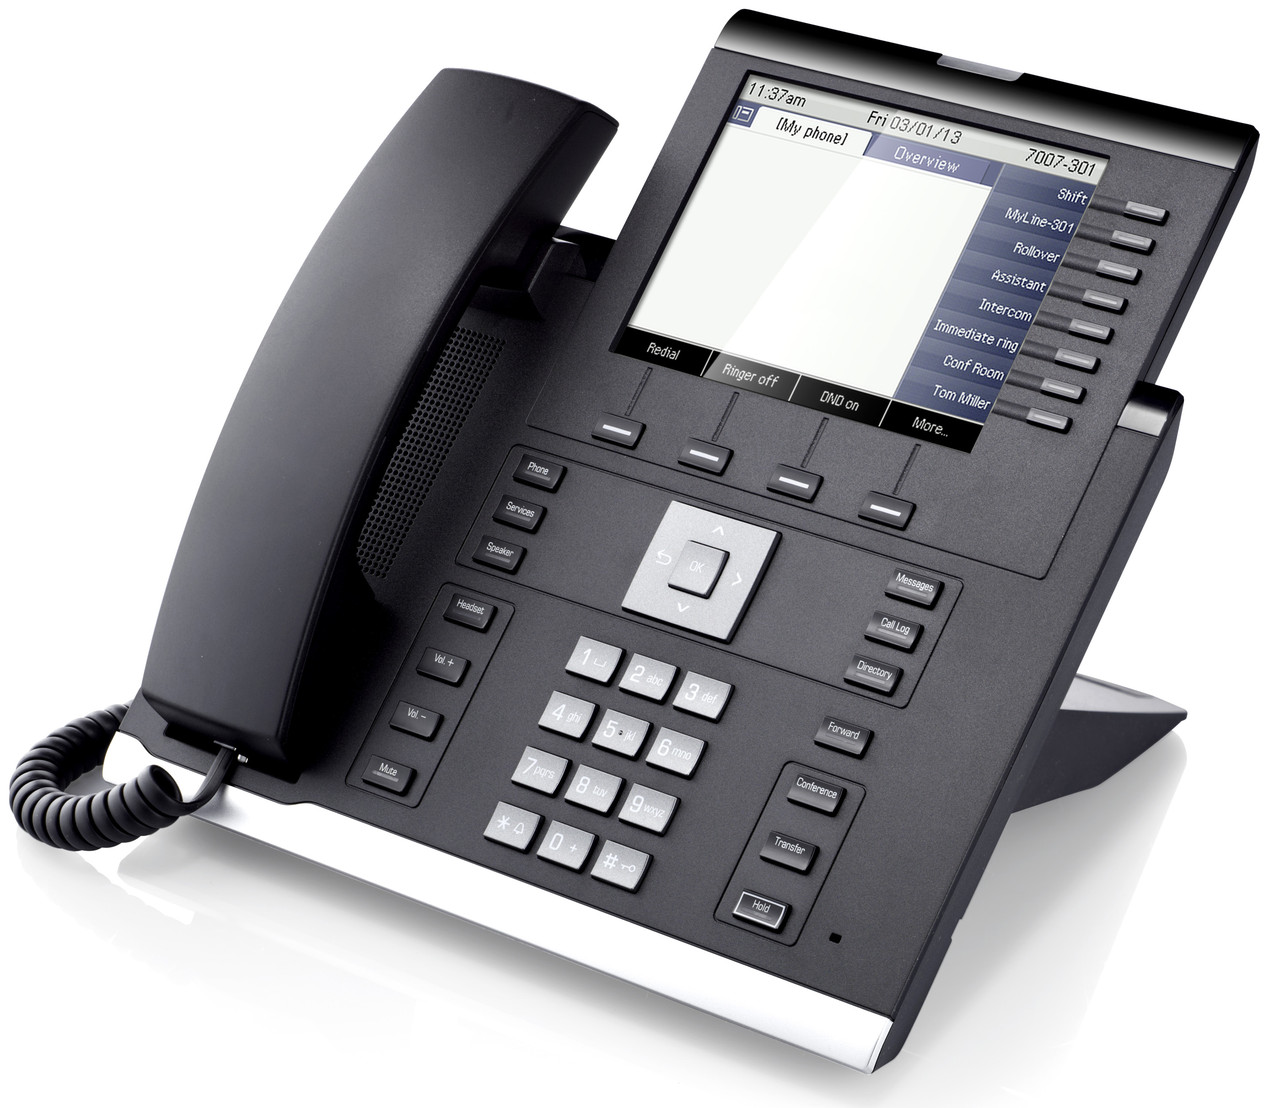 OpenScape Desk Phone IP 55G - инновационное, передовое устройство, специально разработанное для топ-менеджеров